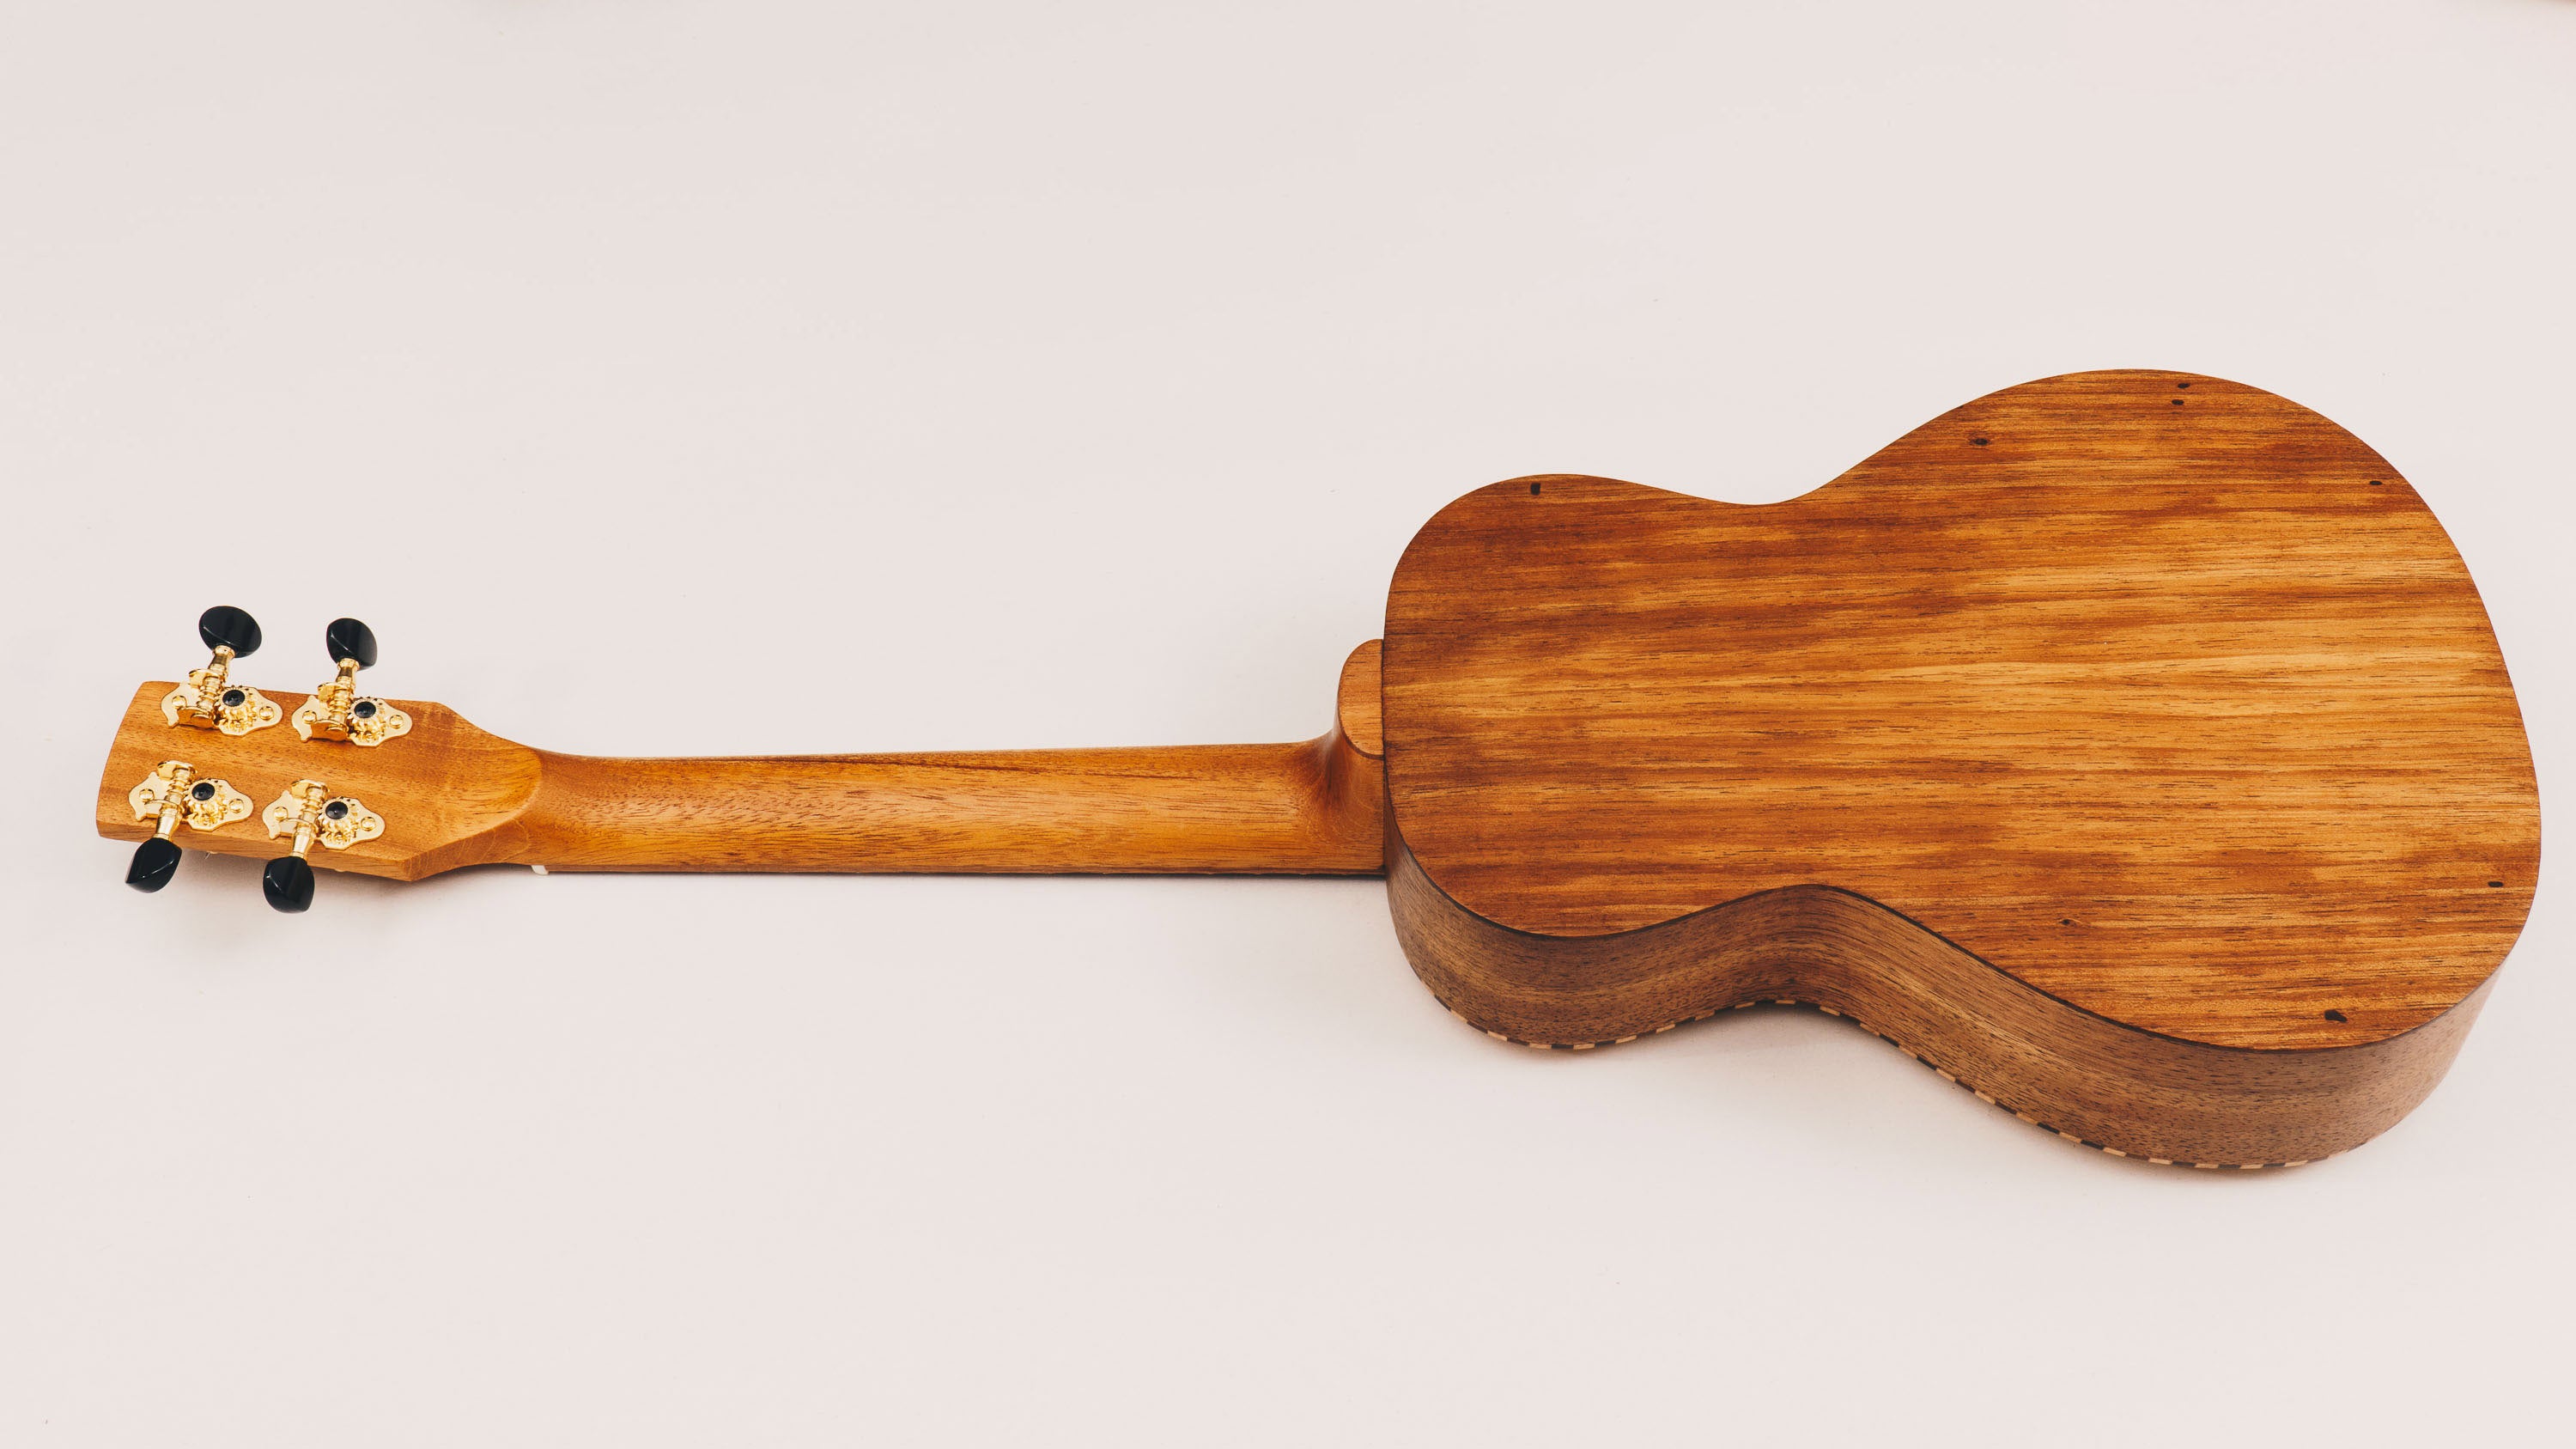 Tenor Ukulele - Tasmanian Blackwood & Sitka Spruce - 'Style 3' Ukulele by master luthier Richard Wilson. Handcrafted in Australia. Serial no. RW2336-426.